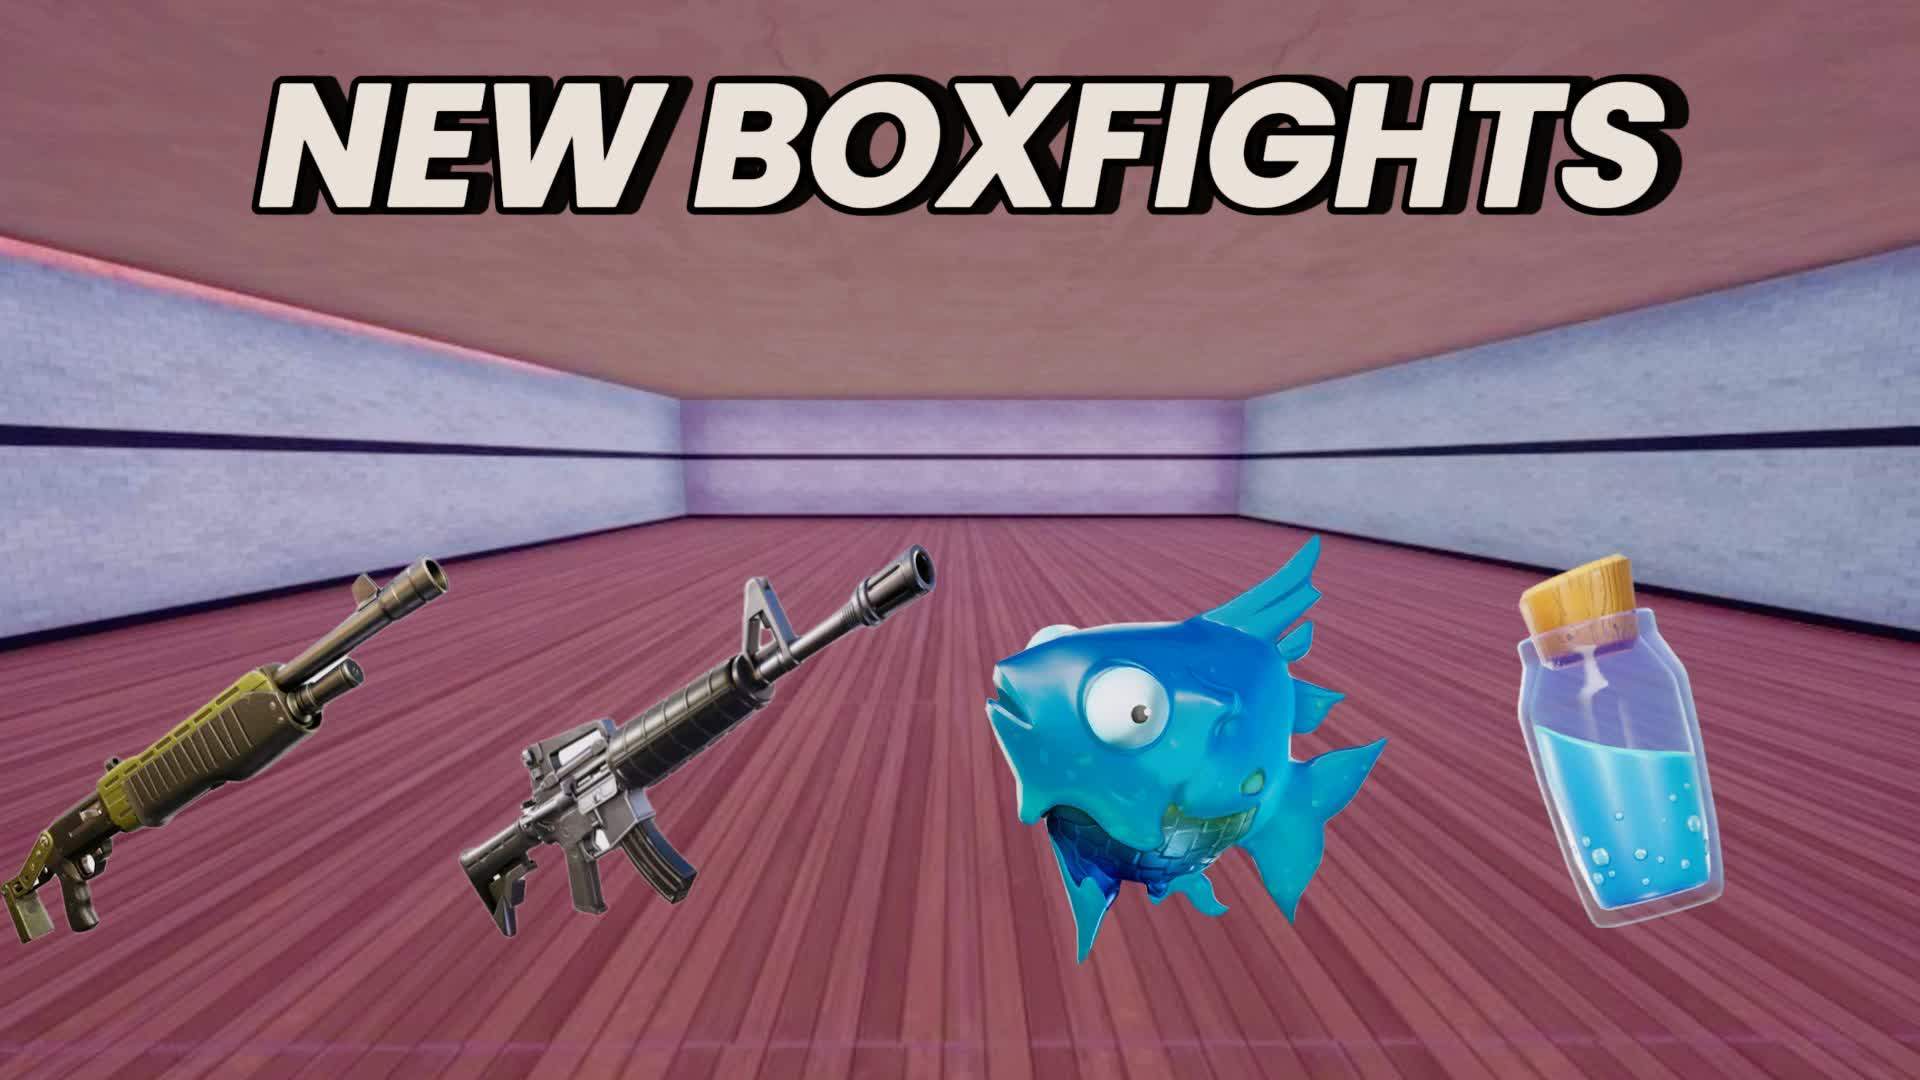 NEW BOXFIGHTS!